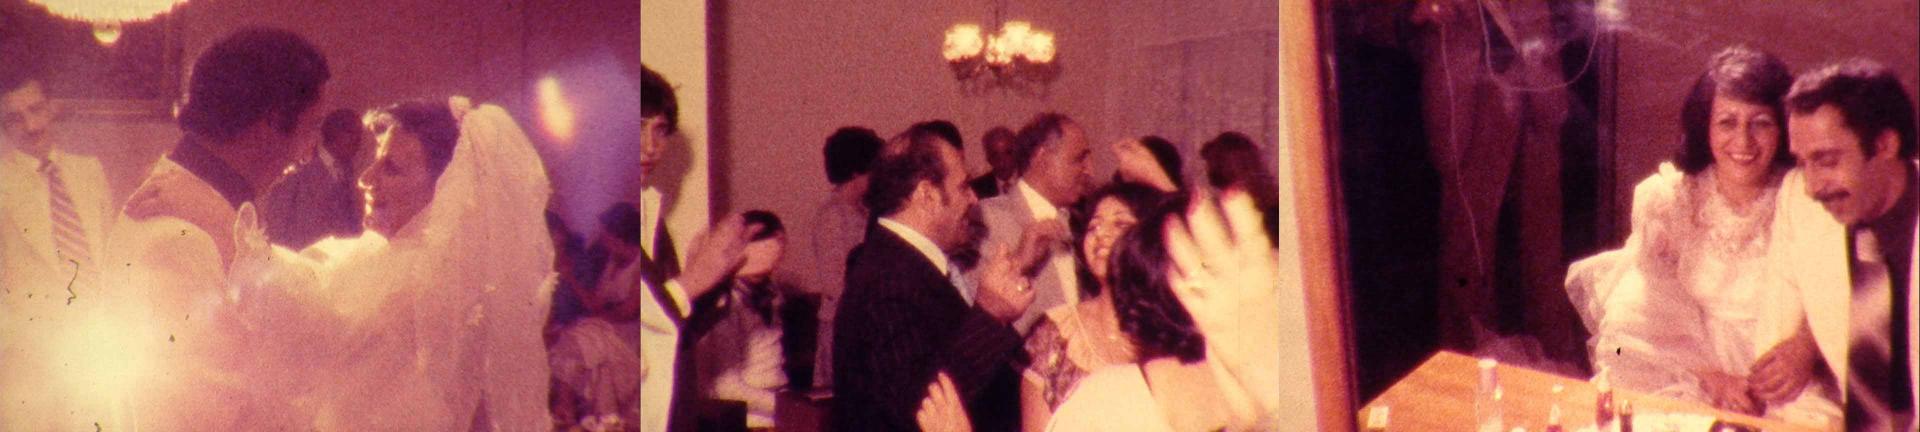 Filmstills: tanzendes Brautpaar - Hochzeitsgäste bei der Feier - glückliches Brautpaar am Tisch